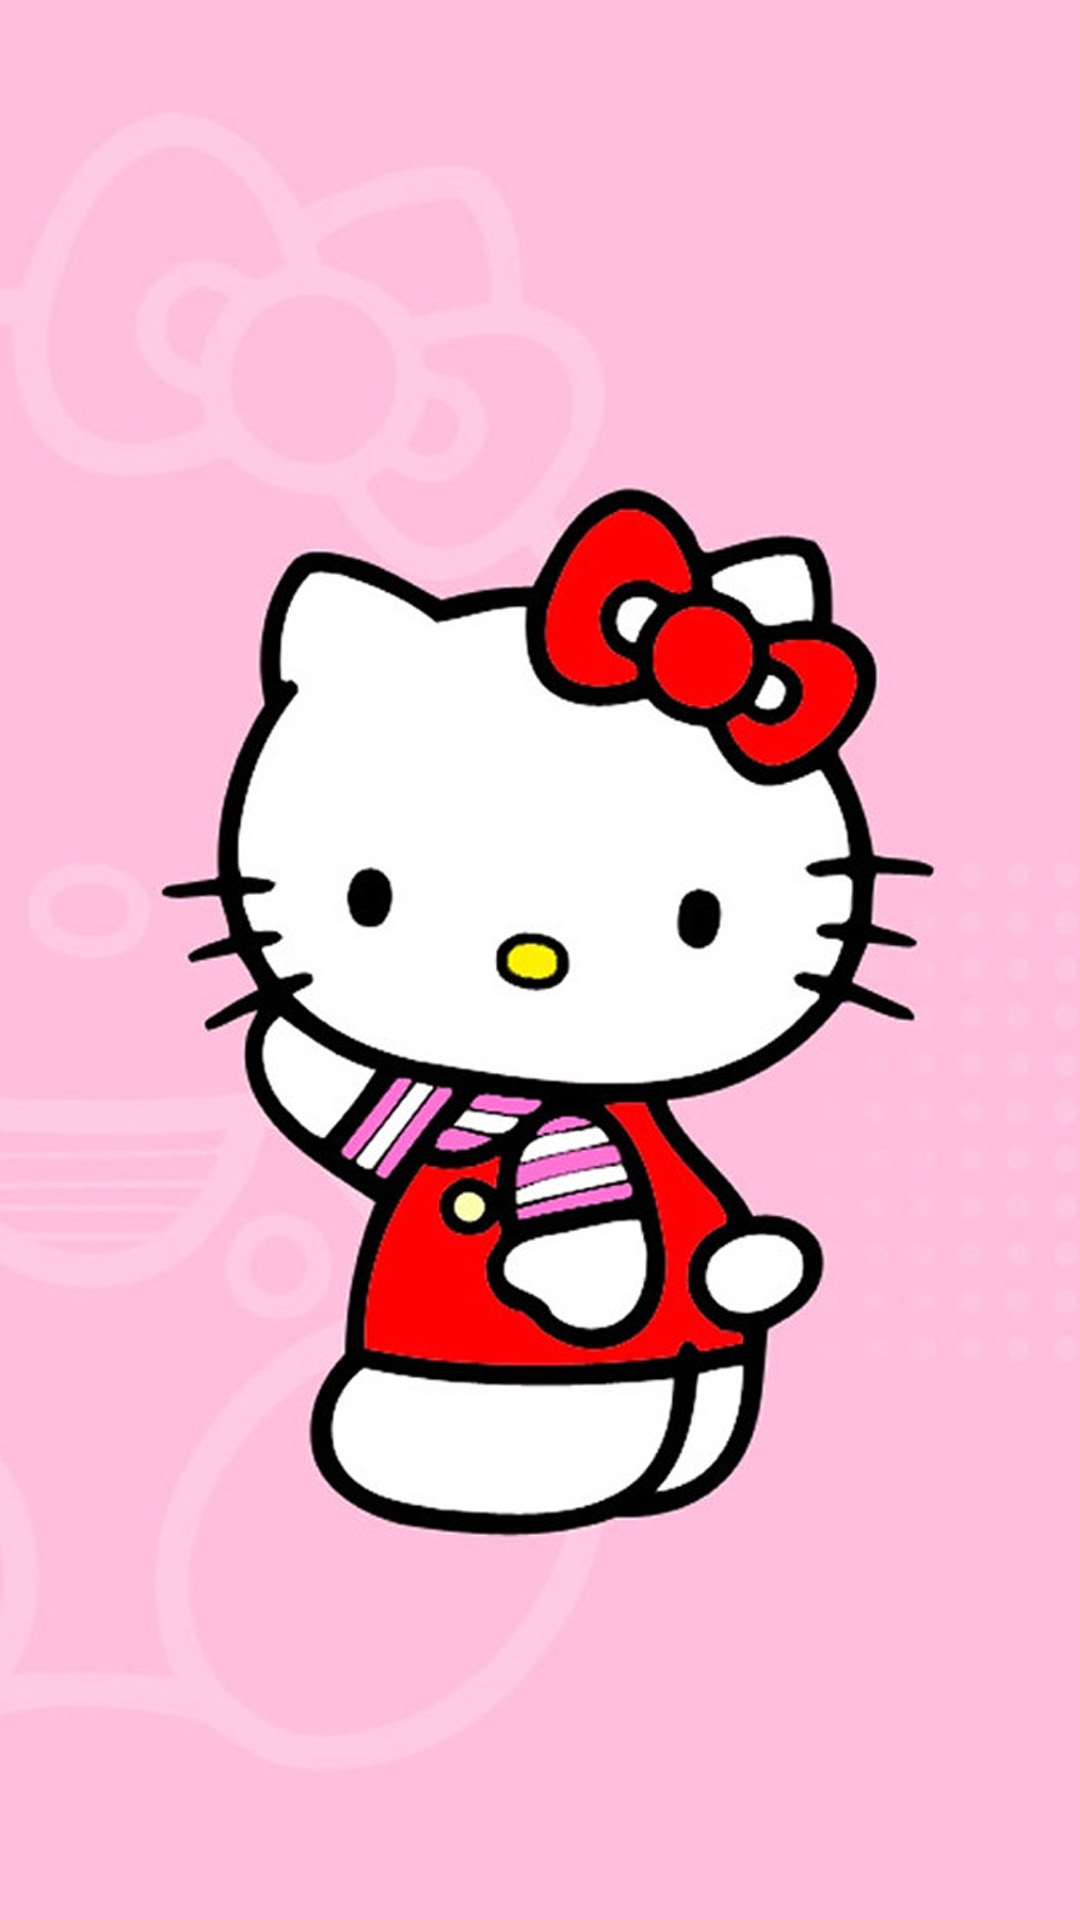 Hello Kitty là một trong những biểu tượng yêu thích của các cô gái trên toàn thế giới. Trong bức ảnh này, bạn sẽ thấy các hình nền ngộ nghĩnh và đáng yêu của Hello Kitty. Hãy tải chúng về điện thoại của mình và tạo cho mình một không gian làm việc vui tươi.